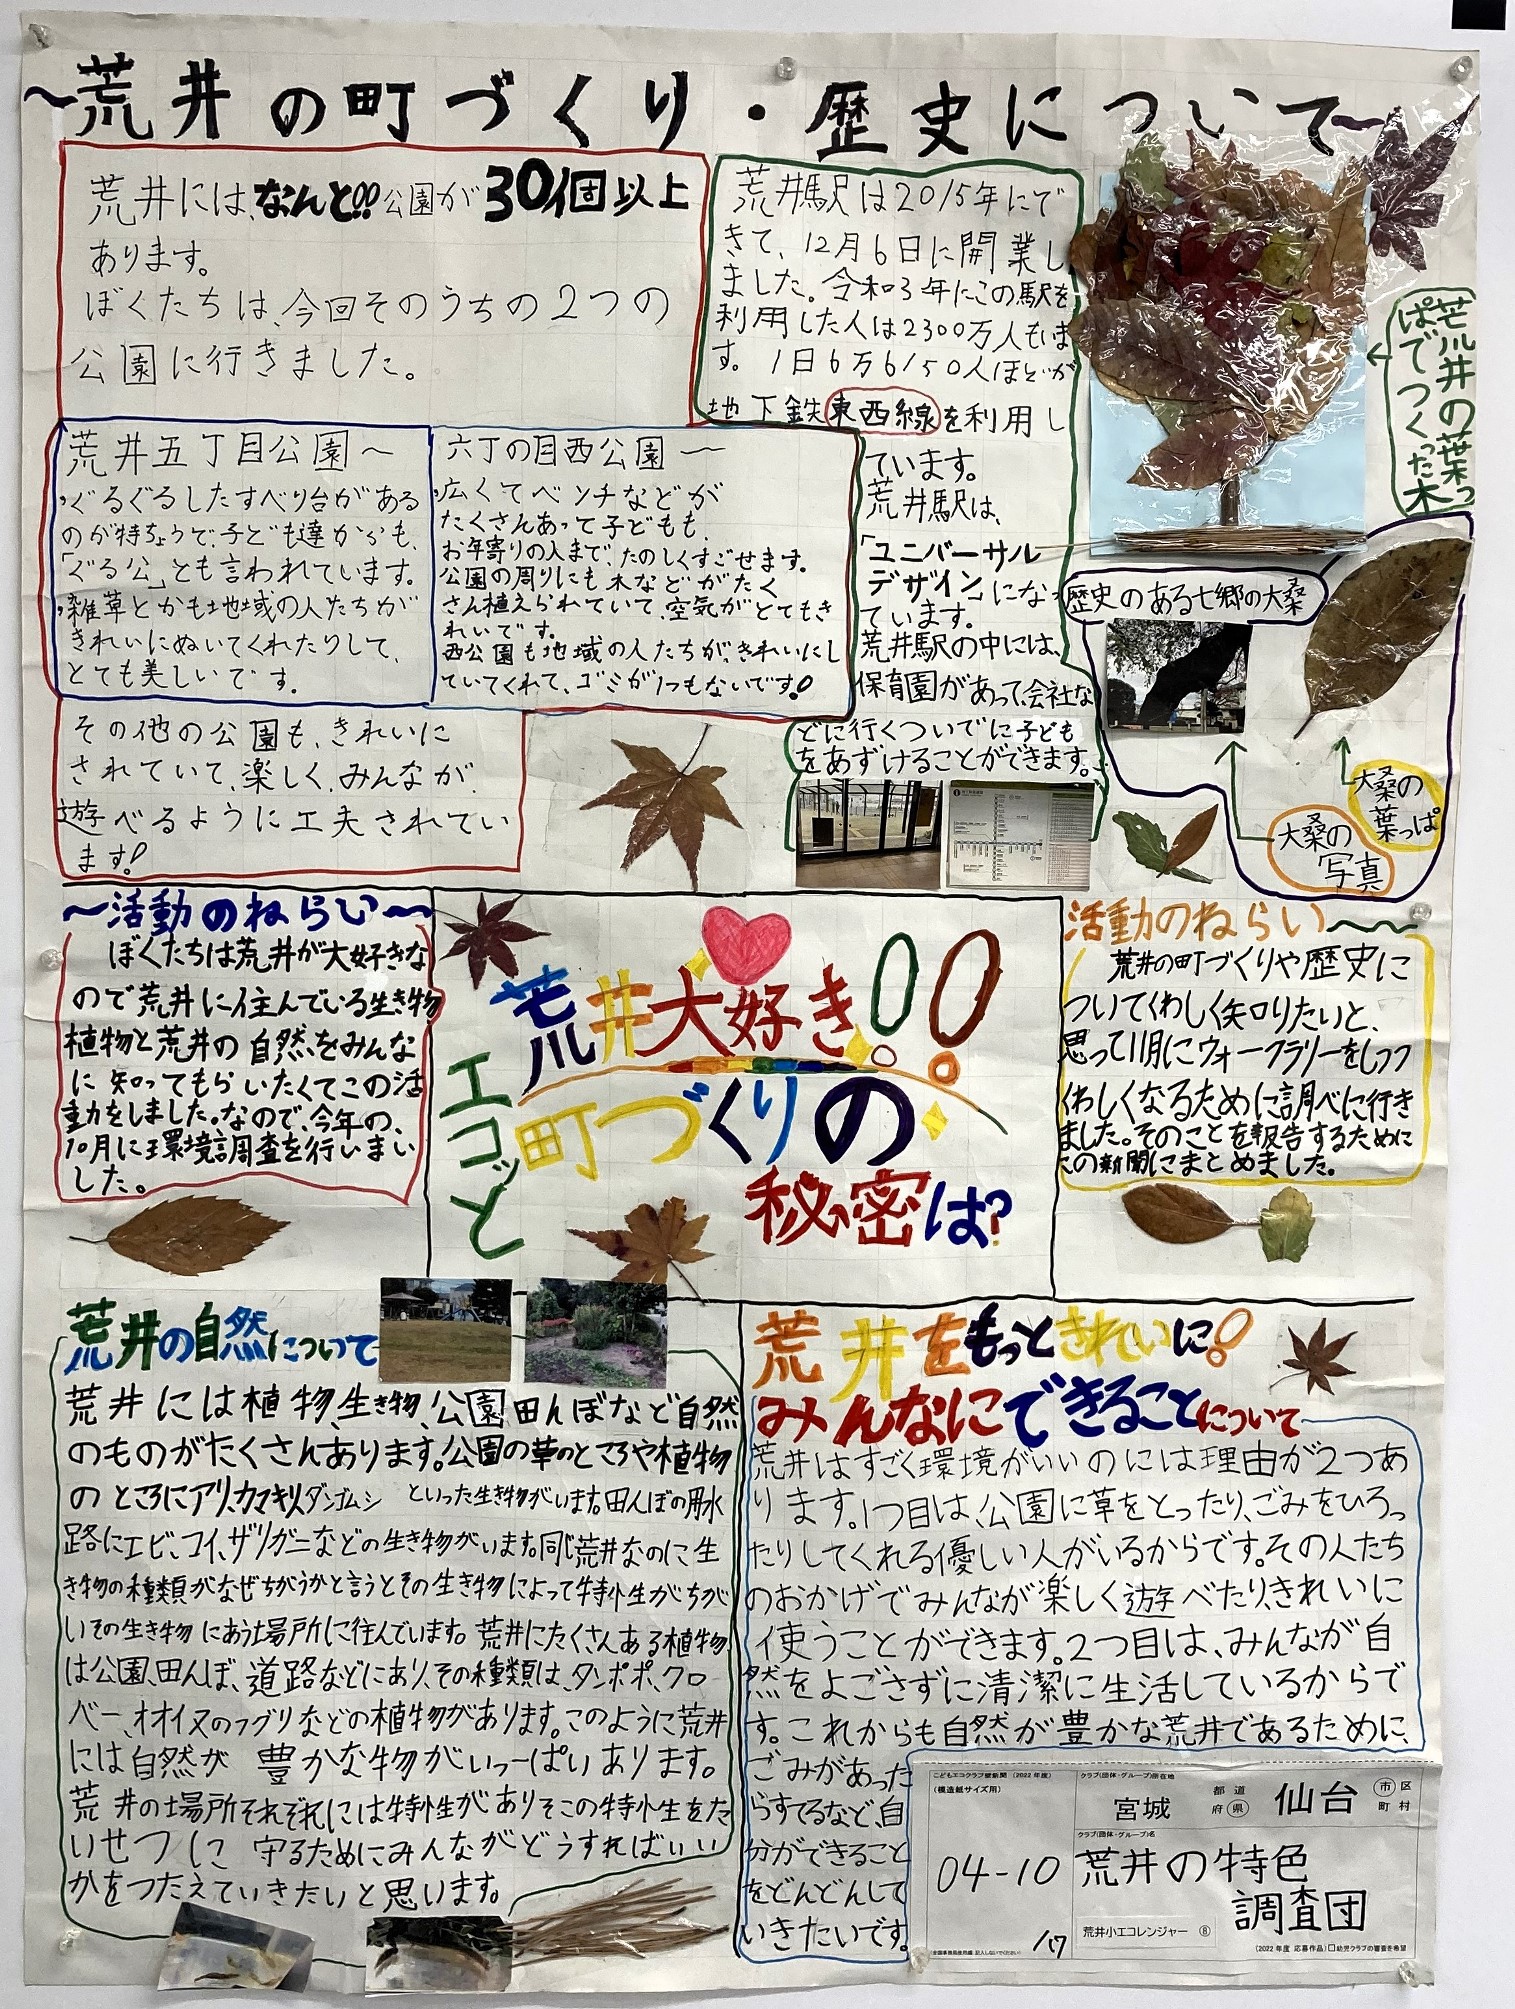 https://www.j-ecoclub.jp/topics/files/23-04-10.JPG